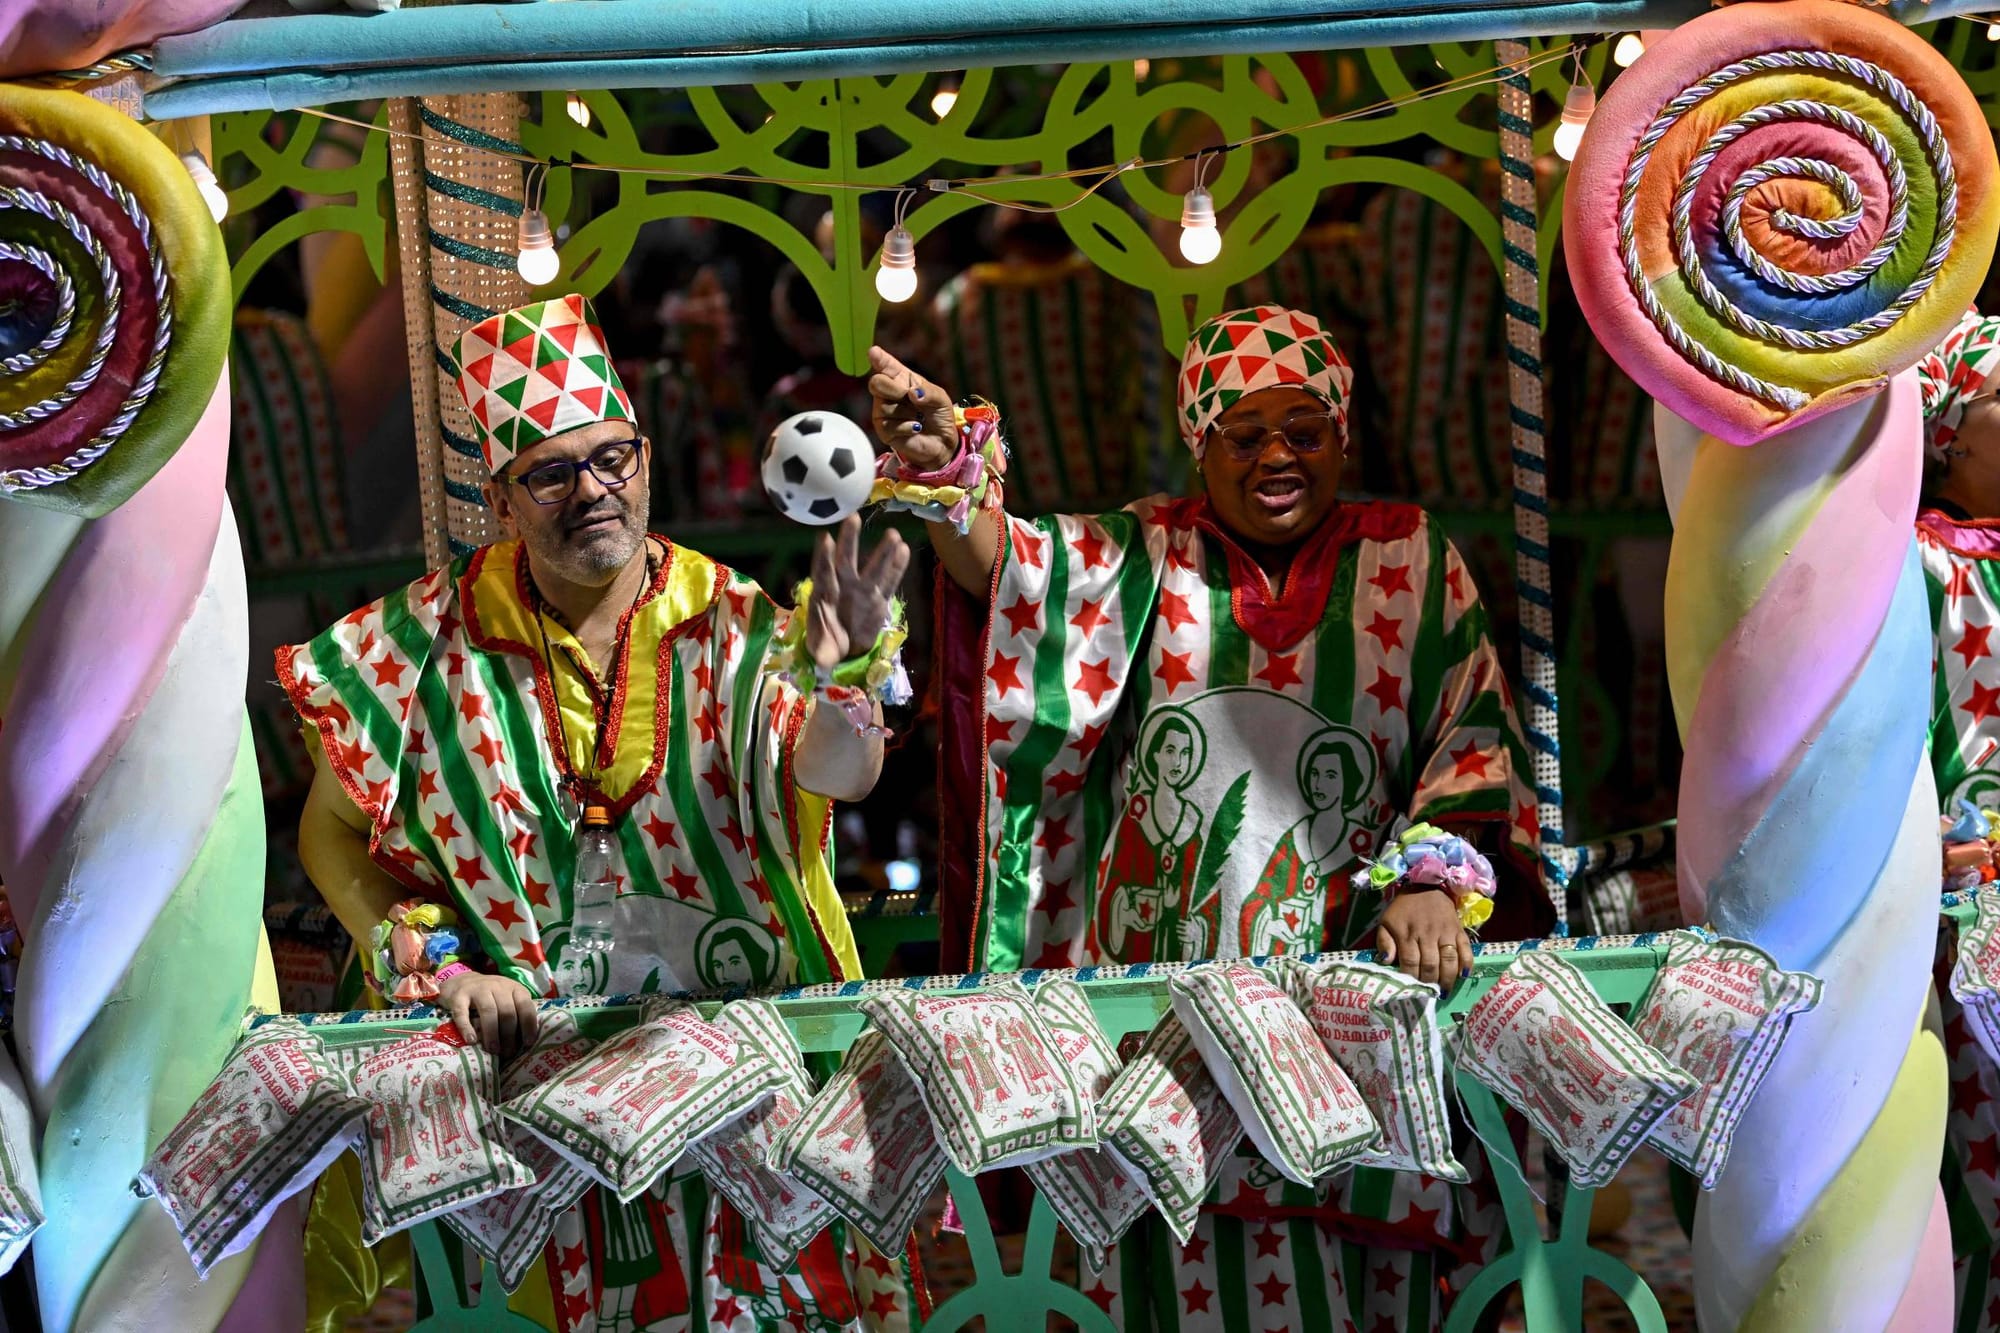 Carnaval e tradições culturais brasileiras vivem conflitos com evangélicos